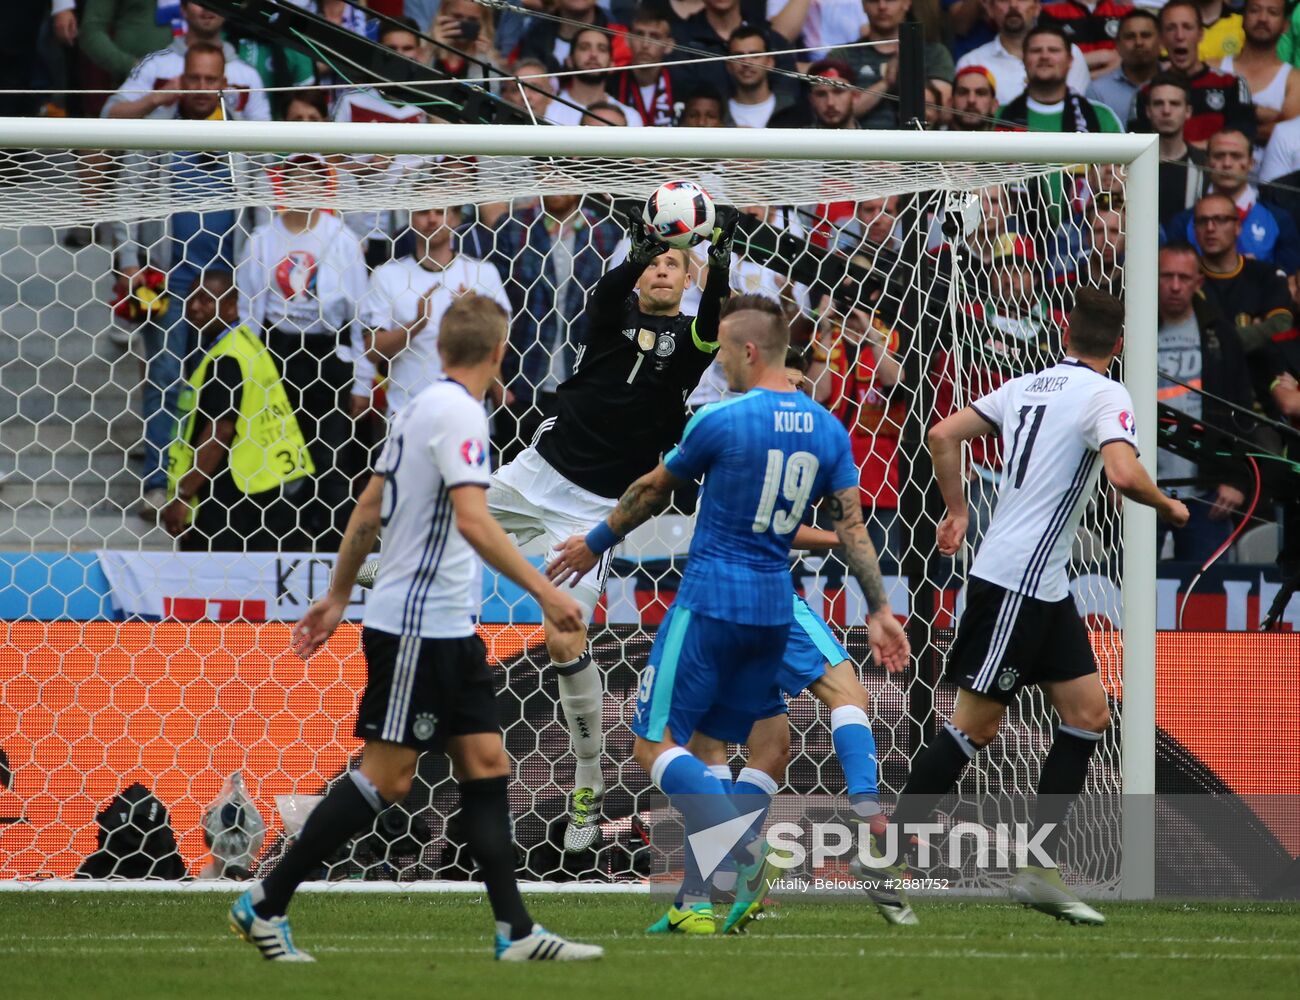 Football. 2016 UEFA European Championship. Germany vs. Slovakia